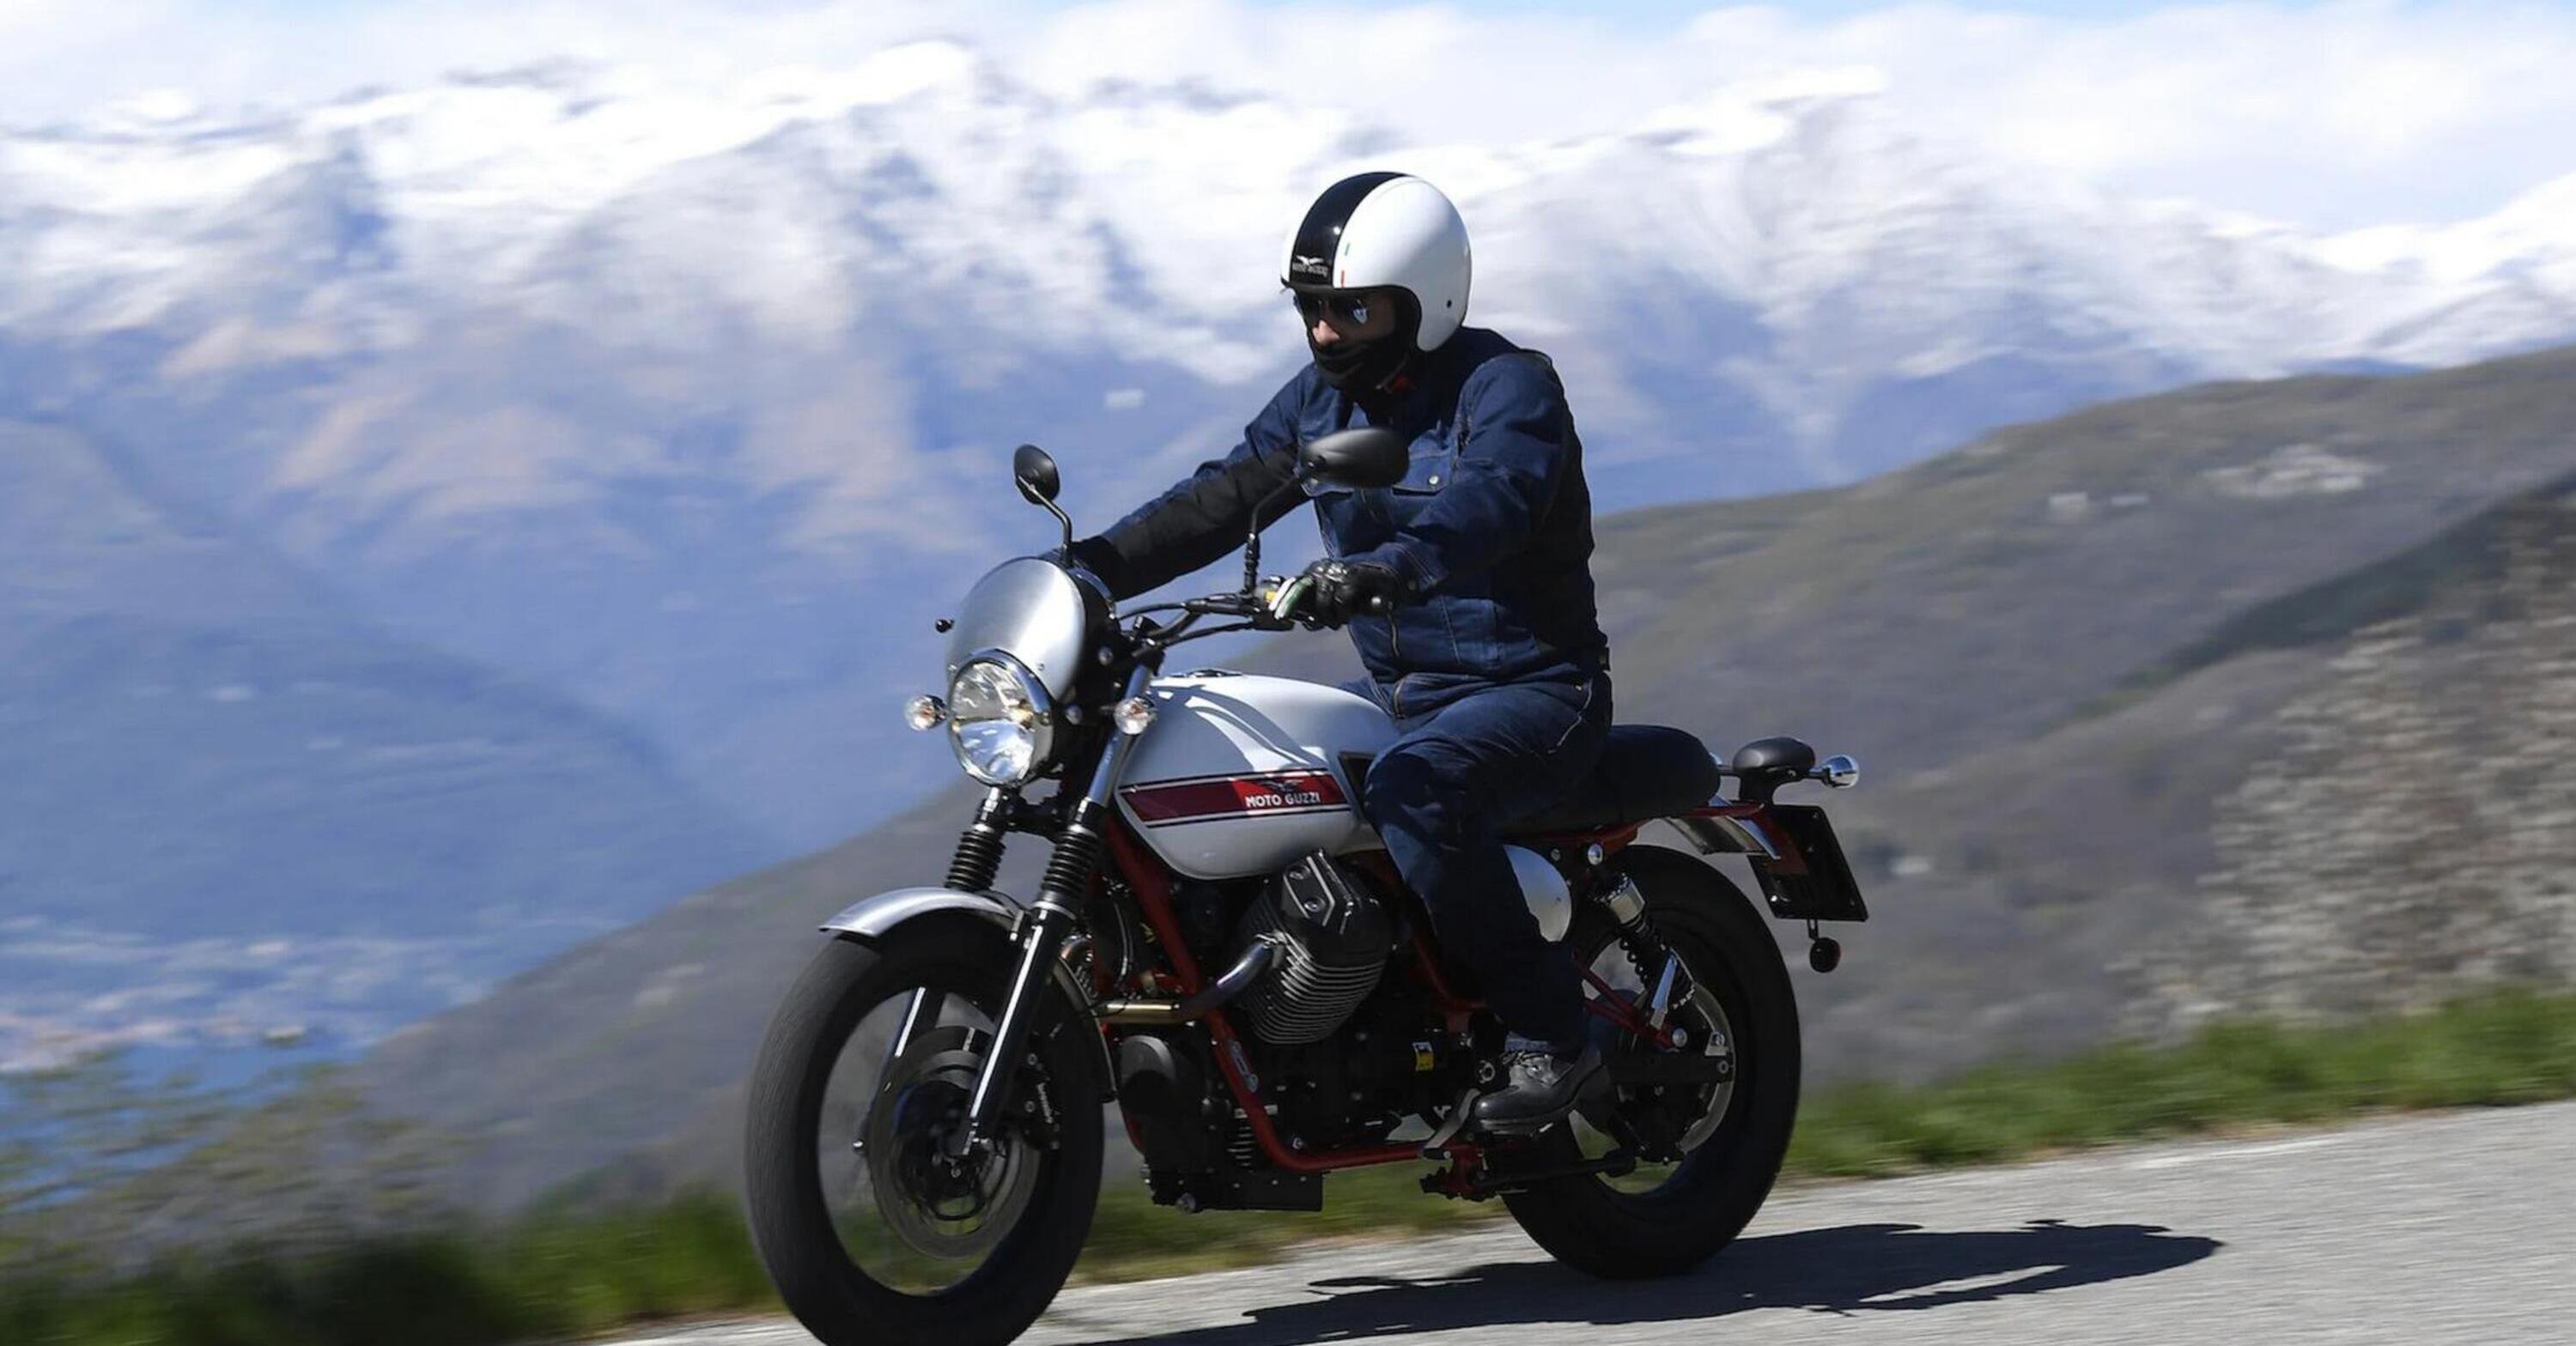 Moto Guzzi rinnova negli US il trademark Stornello